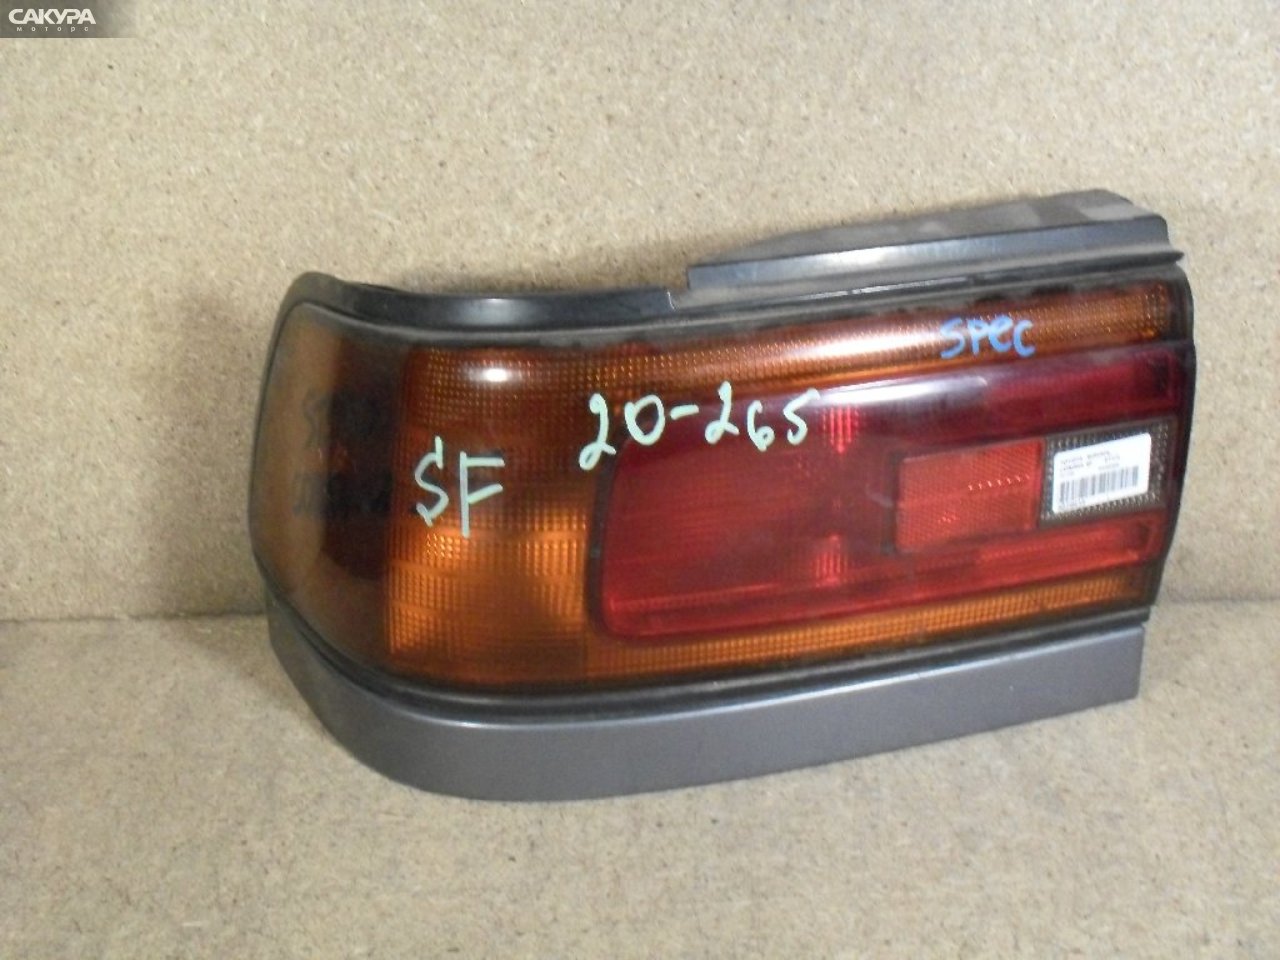 Фонарь стоп-сигнала левый Toyota Corona ST170 20-265: купить в Сакура Абакан.